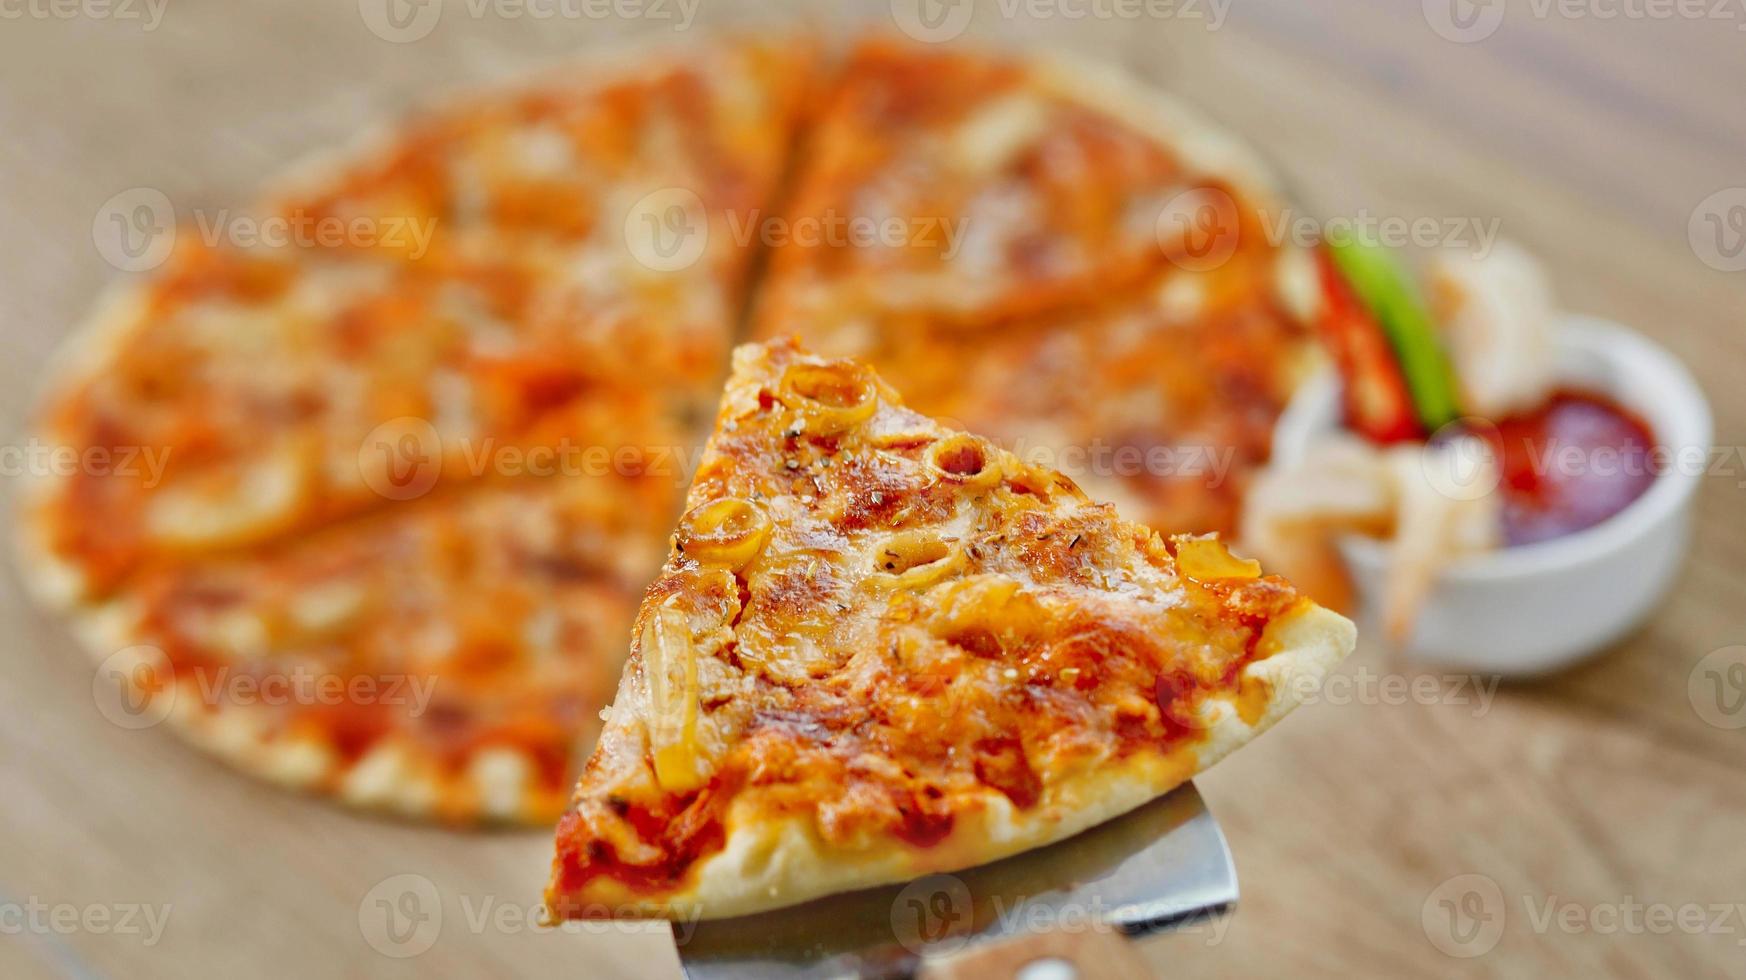 klassisk skaldjur pizza med kryddad chili sås. foto